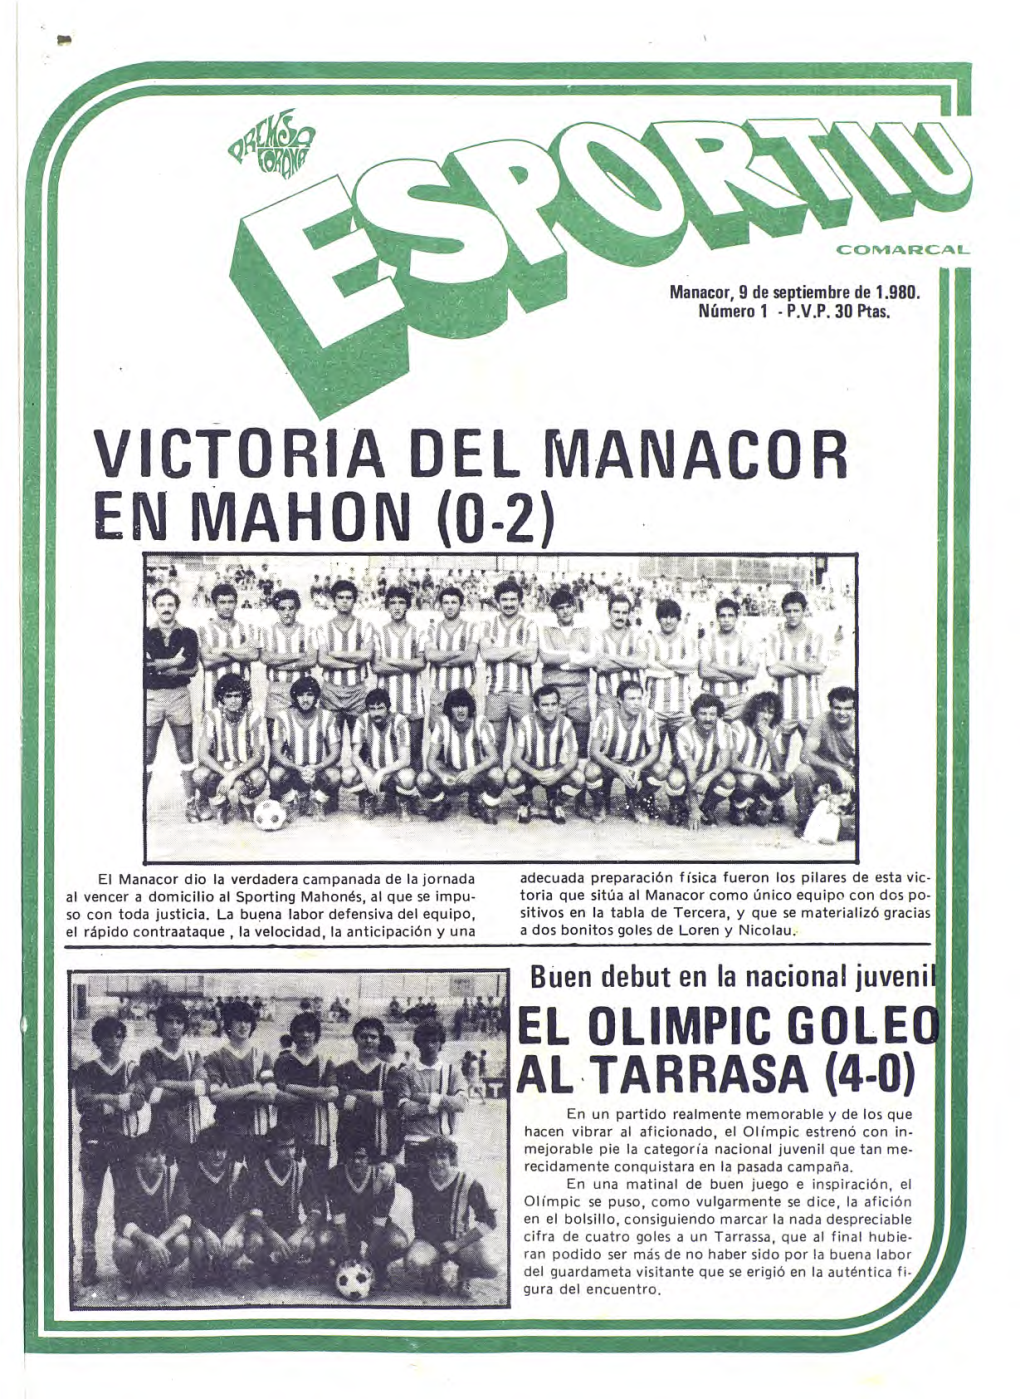 Victoria Del Manacor En Mahon (0-2)